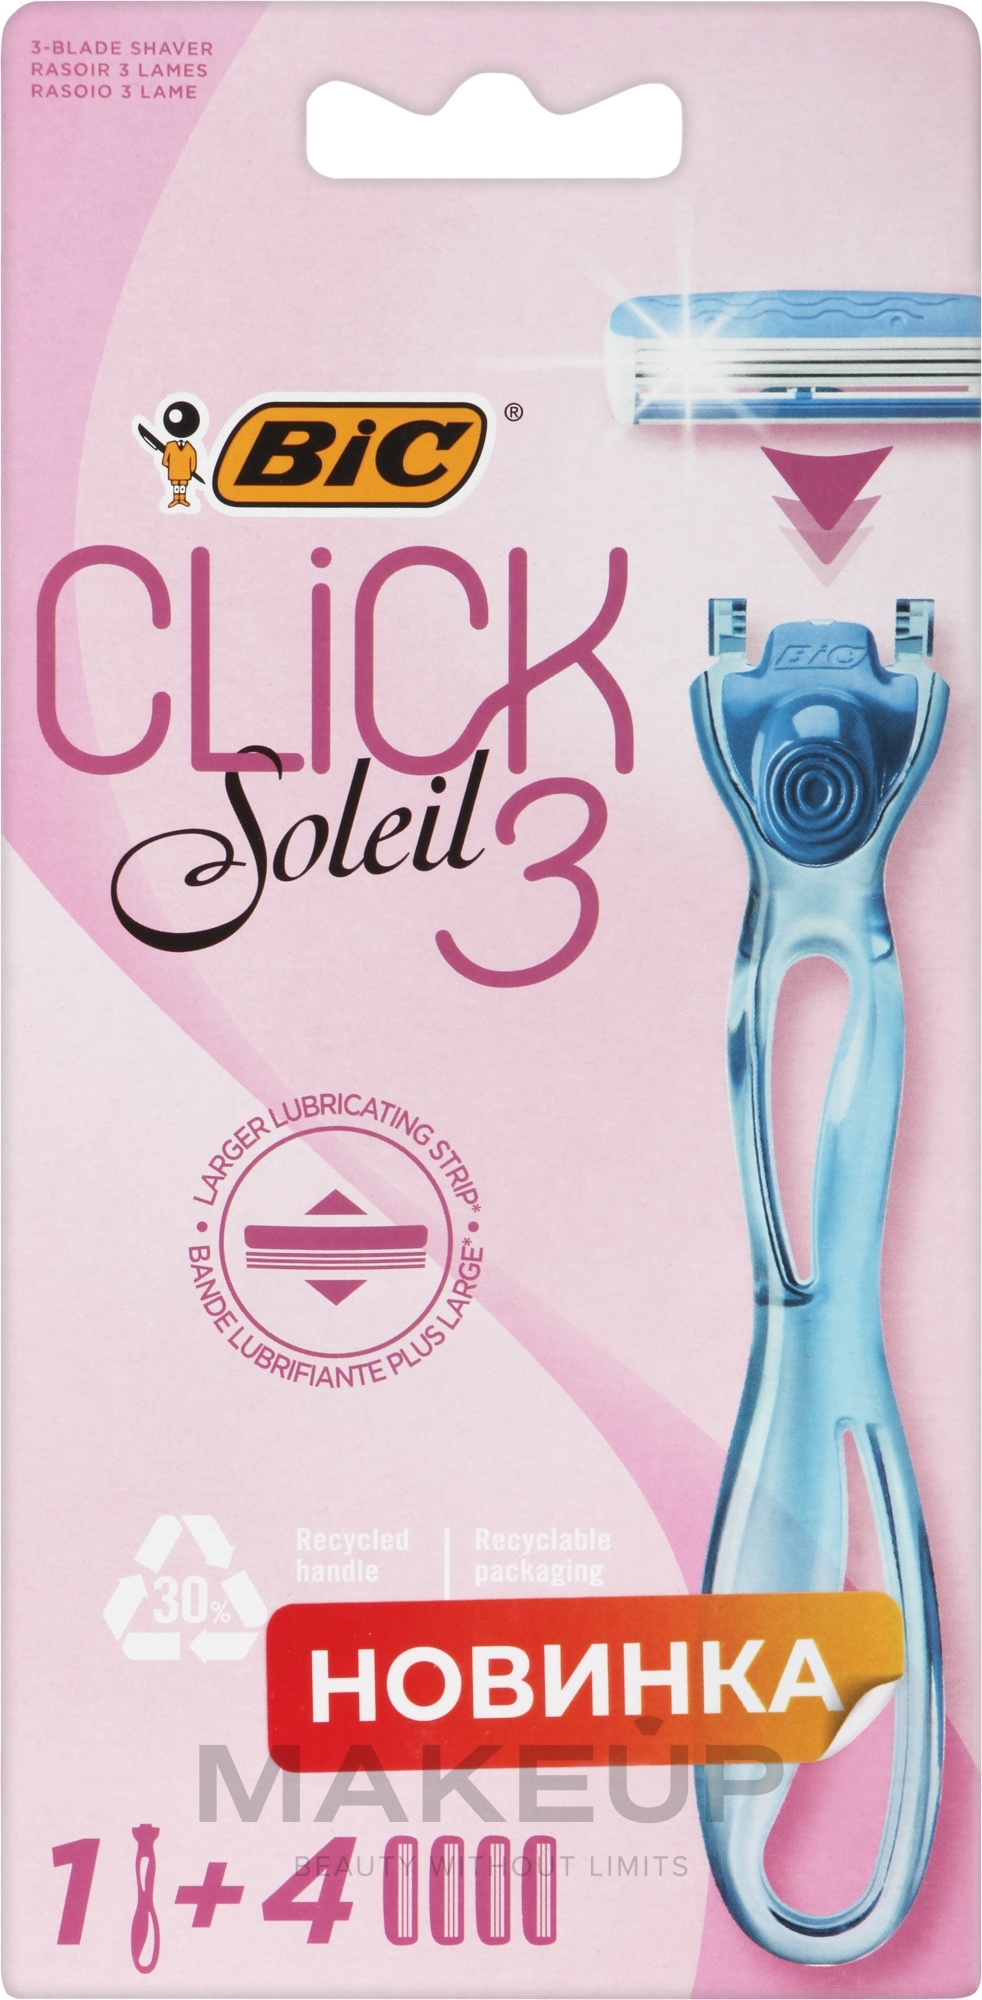 Женская бритва c 4 сменными кассетами - Bic Click 3 Soleil Sensitive — фото 4шт